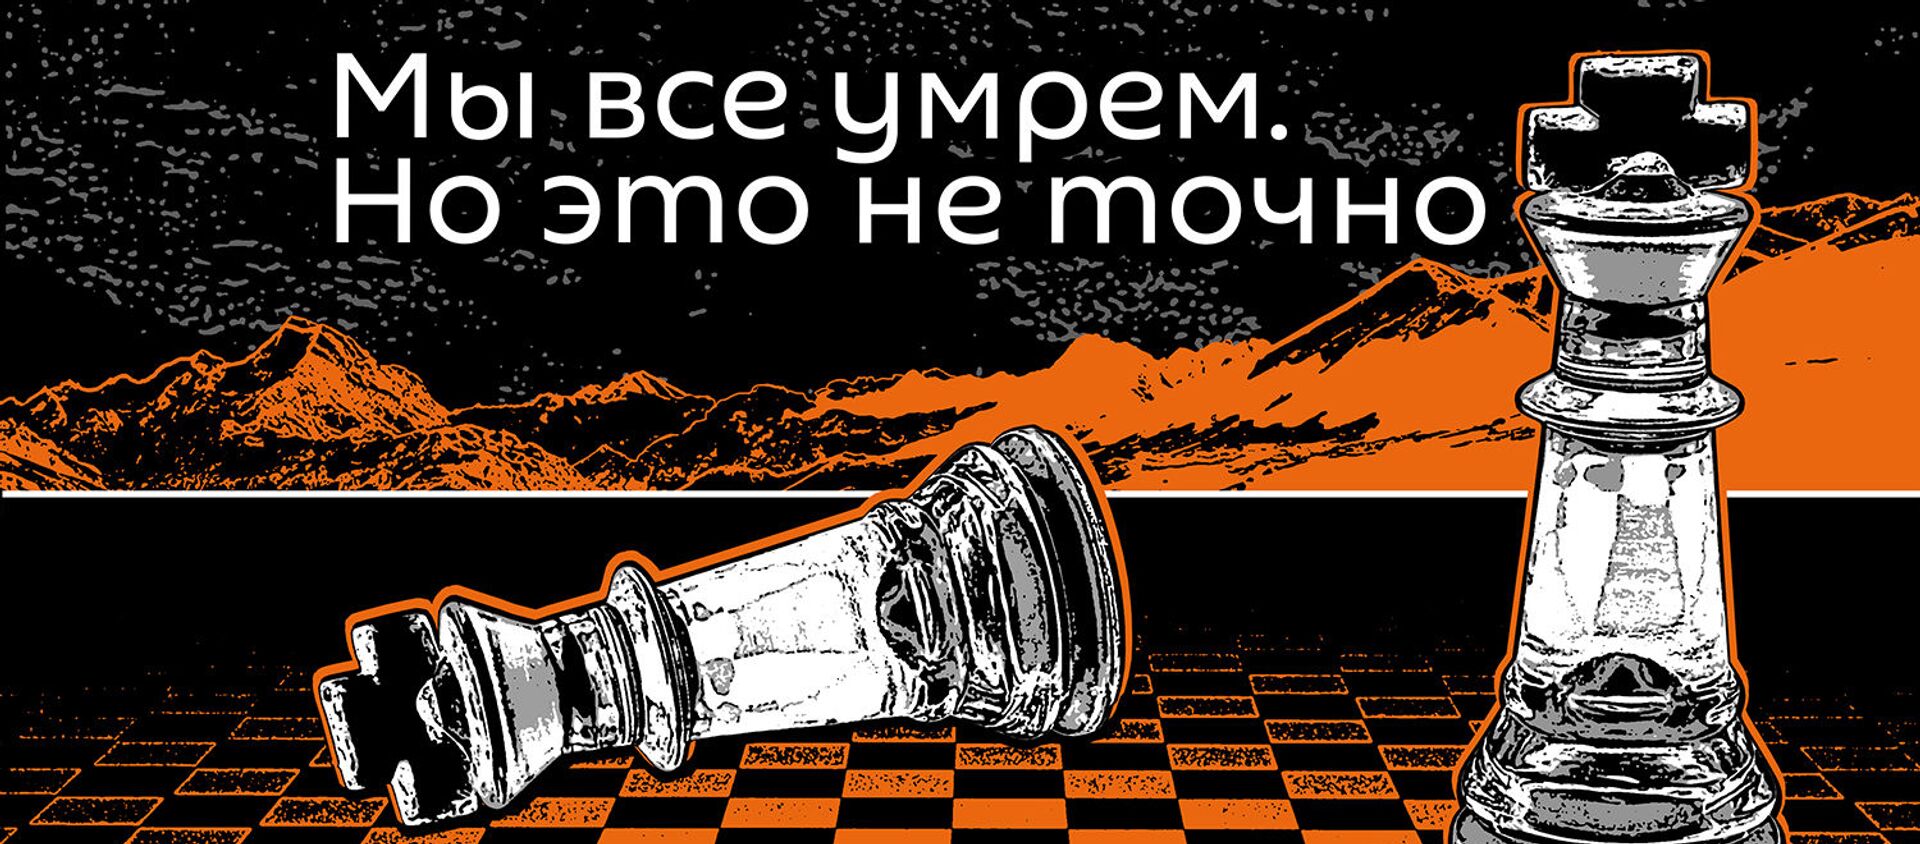 Мы все умрем, но это неточно  - Sputnik Казахстан, 1920, 16.05.2021